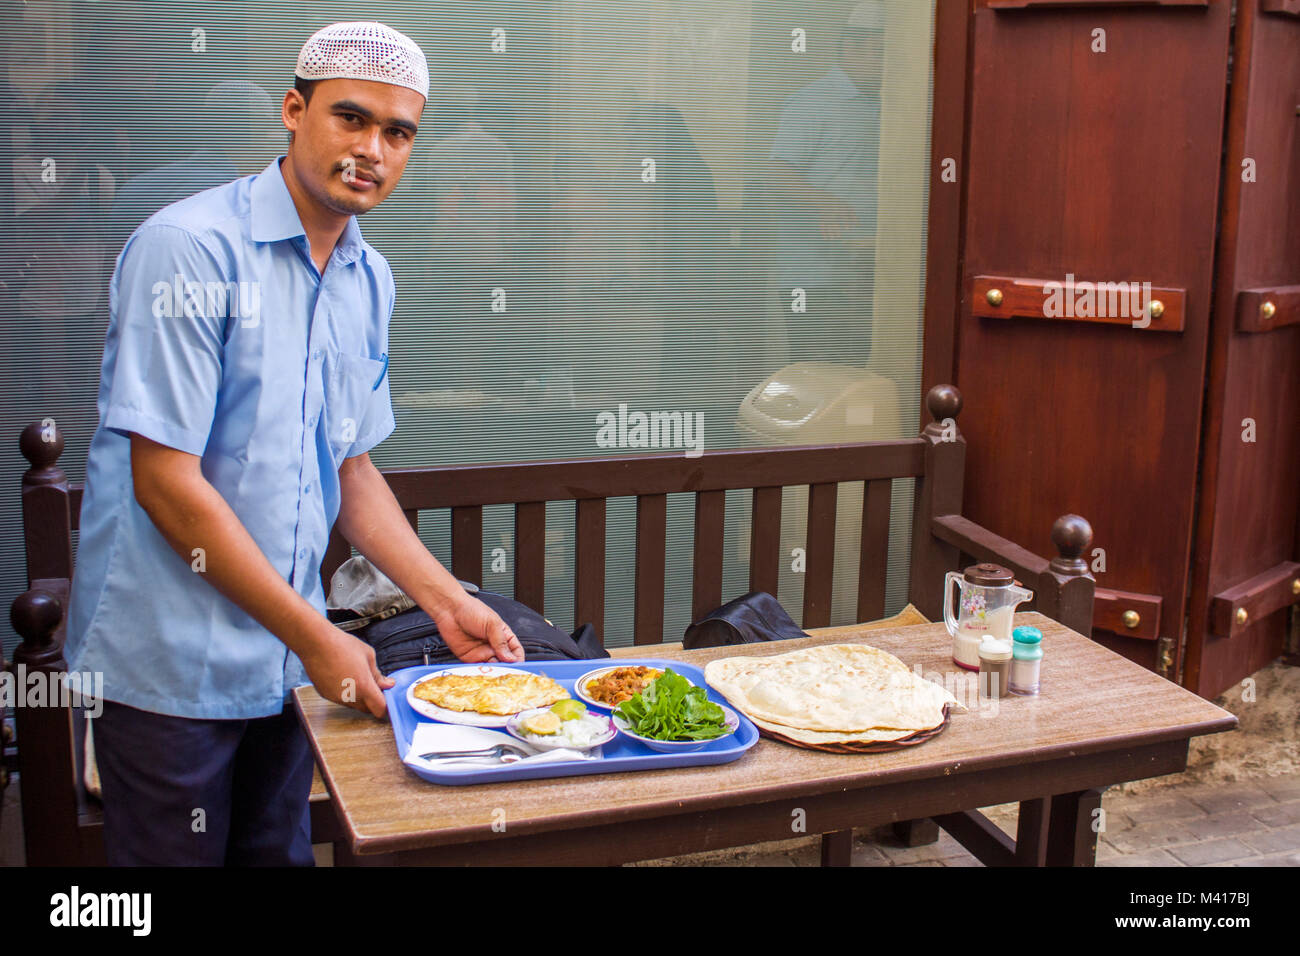 Cameriere che serve la prima colazione per il cliente in un bazar in Mnama, Bahrein.La maggior parte dei lavoratori nella regione del medio oriente provengono da Asia meridionale, Foto Stock